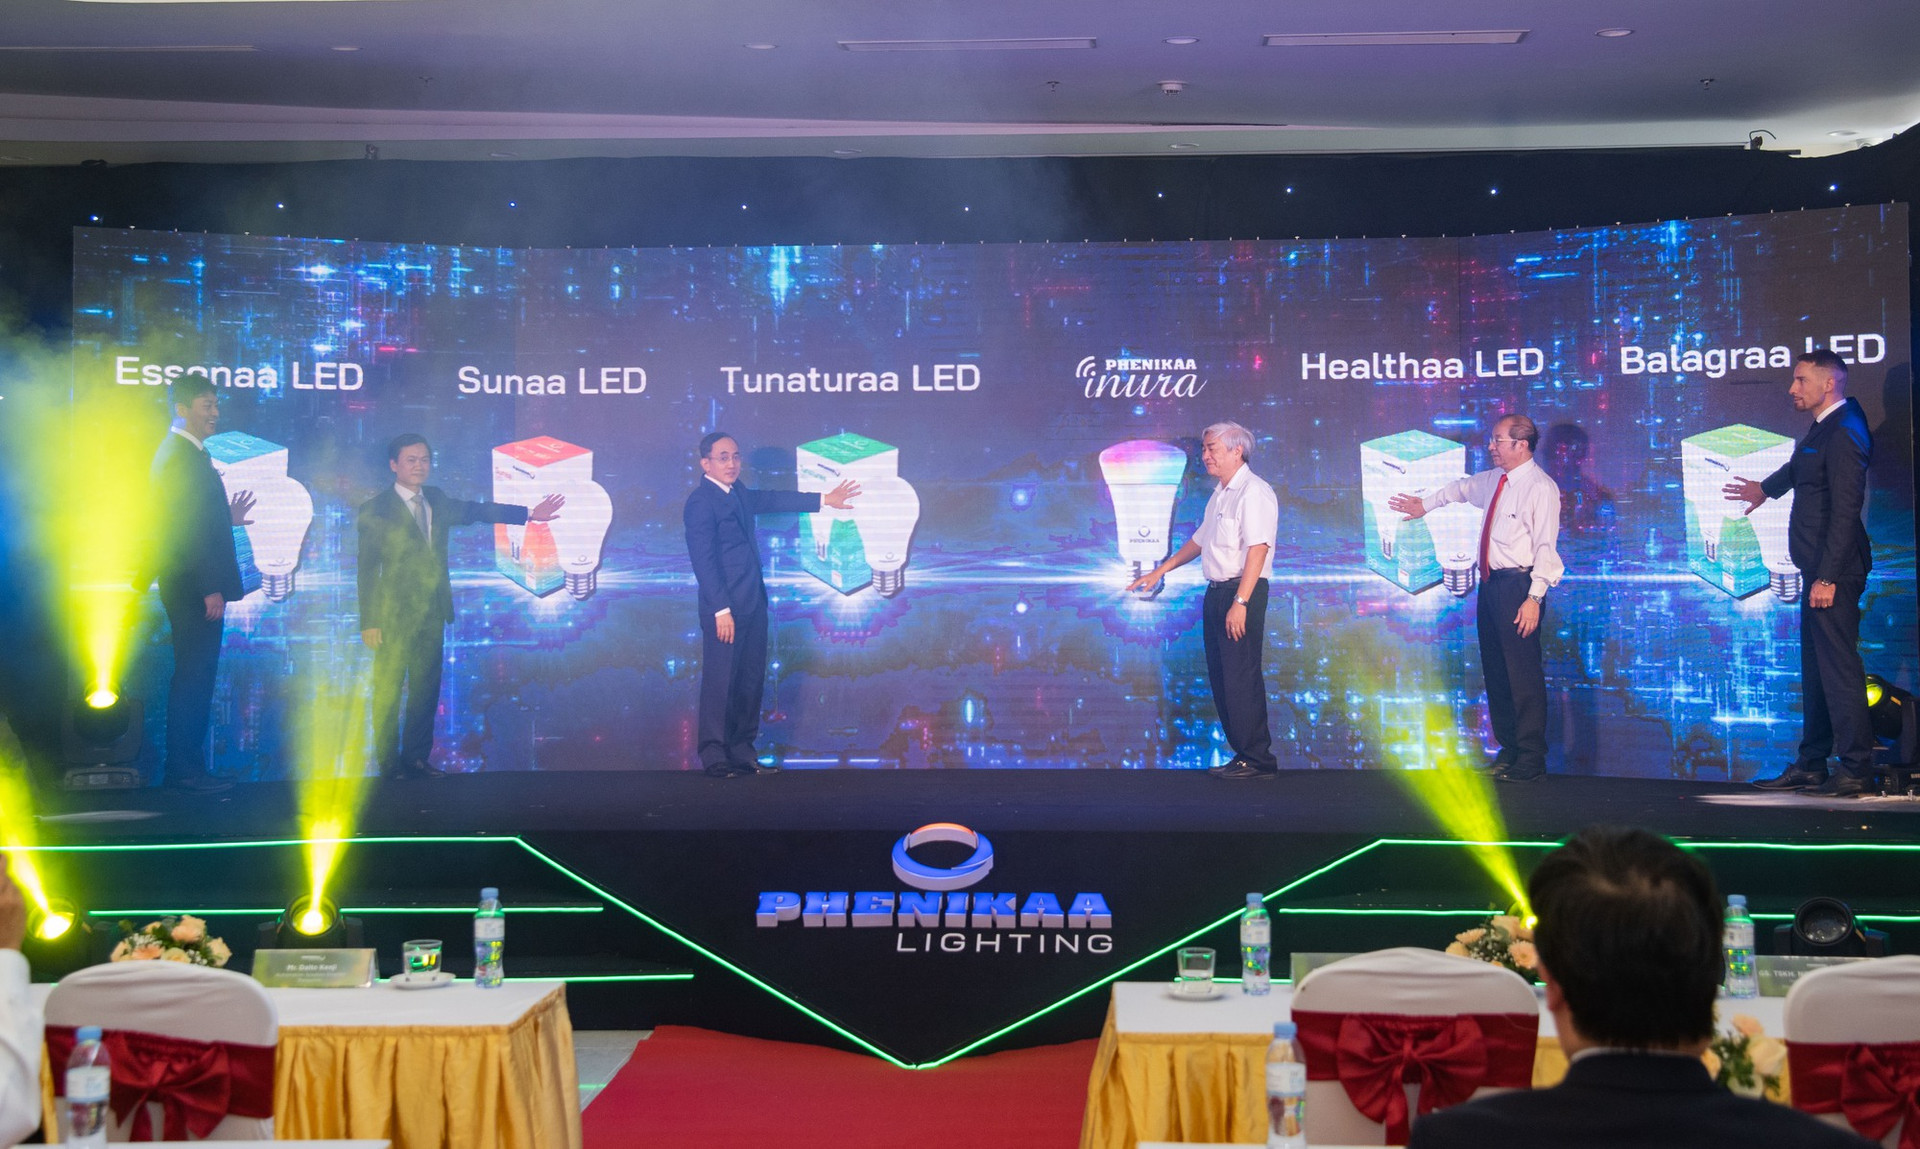 Ra mắt thương hiệu chiếu sáng tự nhiên Phenikaa Lighting do người Việt sáng chế - Ảnh 3.